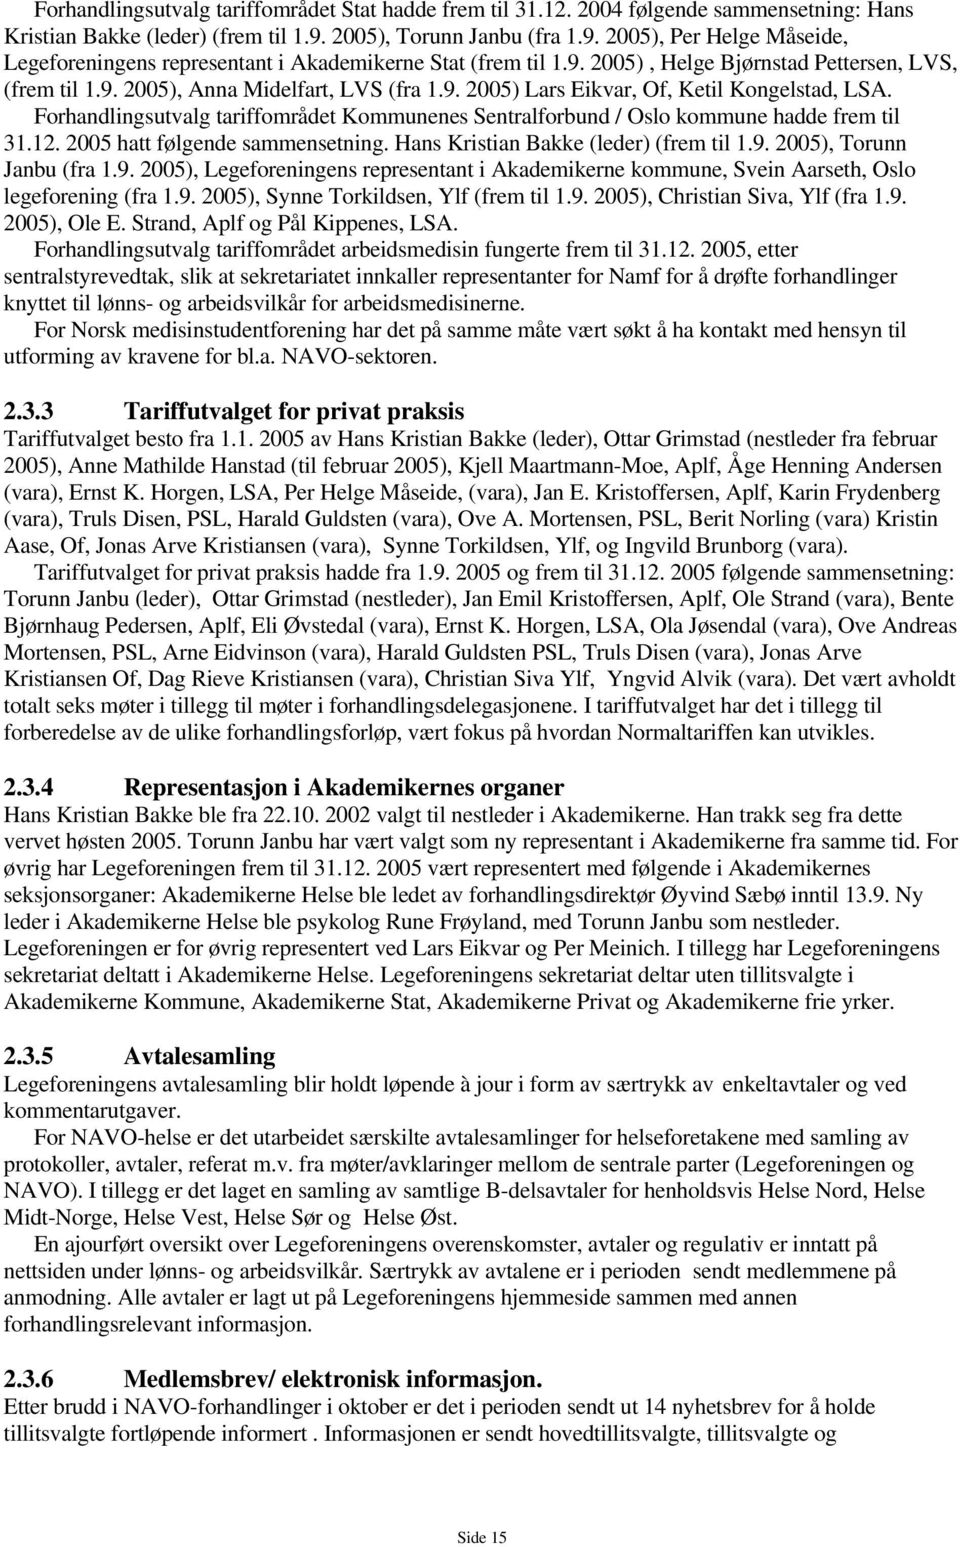 9. 2005) Lars Eikvar, Of, Ketil Kongelstad, LSA. Forhandlingsutvalg tariffområdet Kommunenes Sentralforbund / Oslo kommune hadde frem til 31.12. 2005 hatt følgende sammensetning.